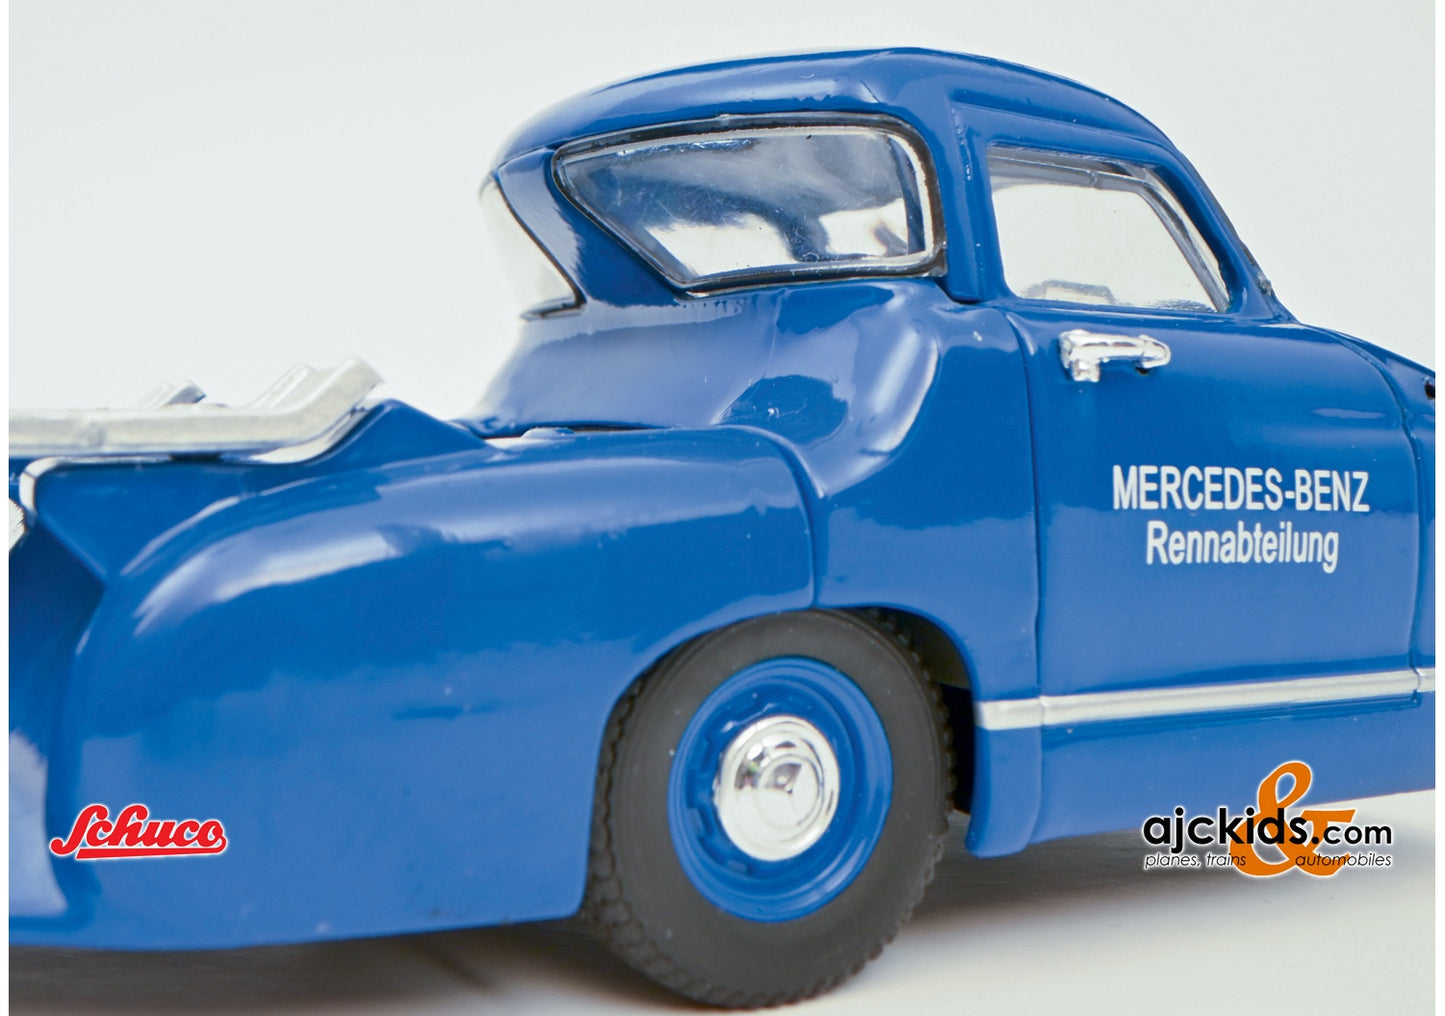 Schuco 450253800 - MB Renntransporter blue 1:43